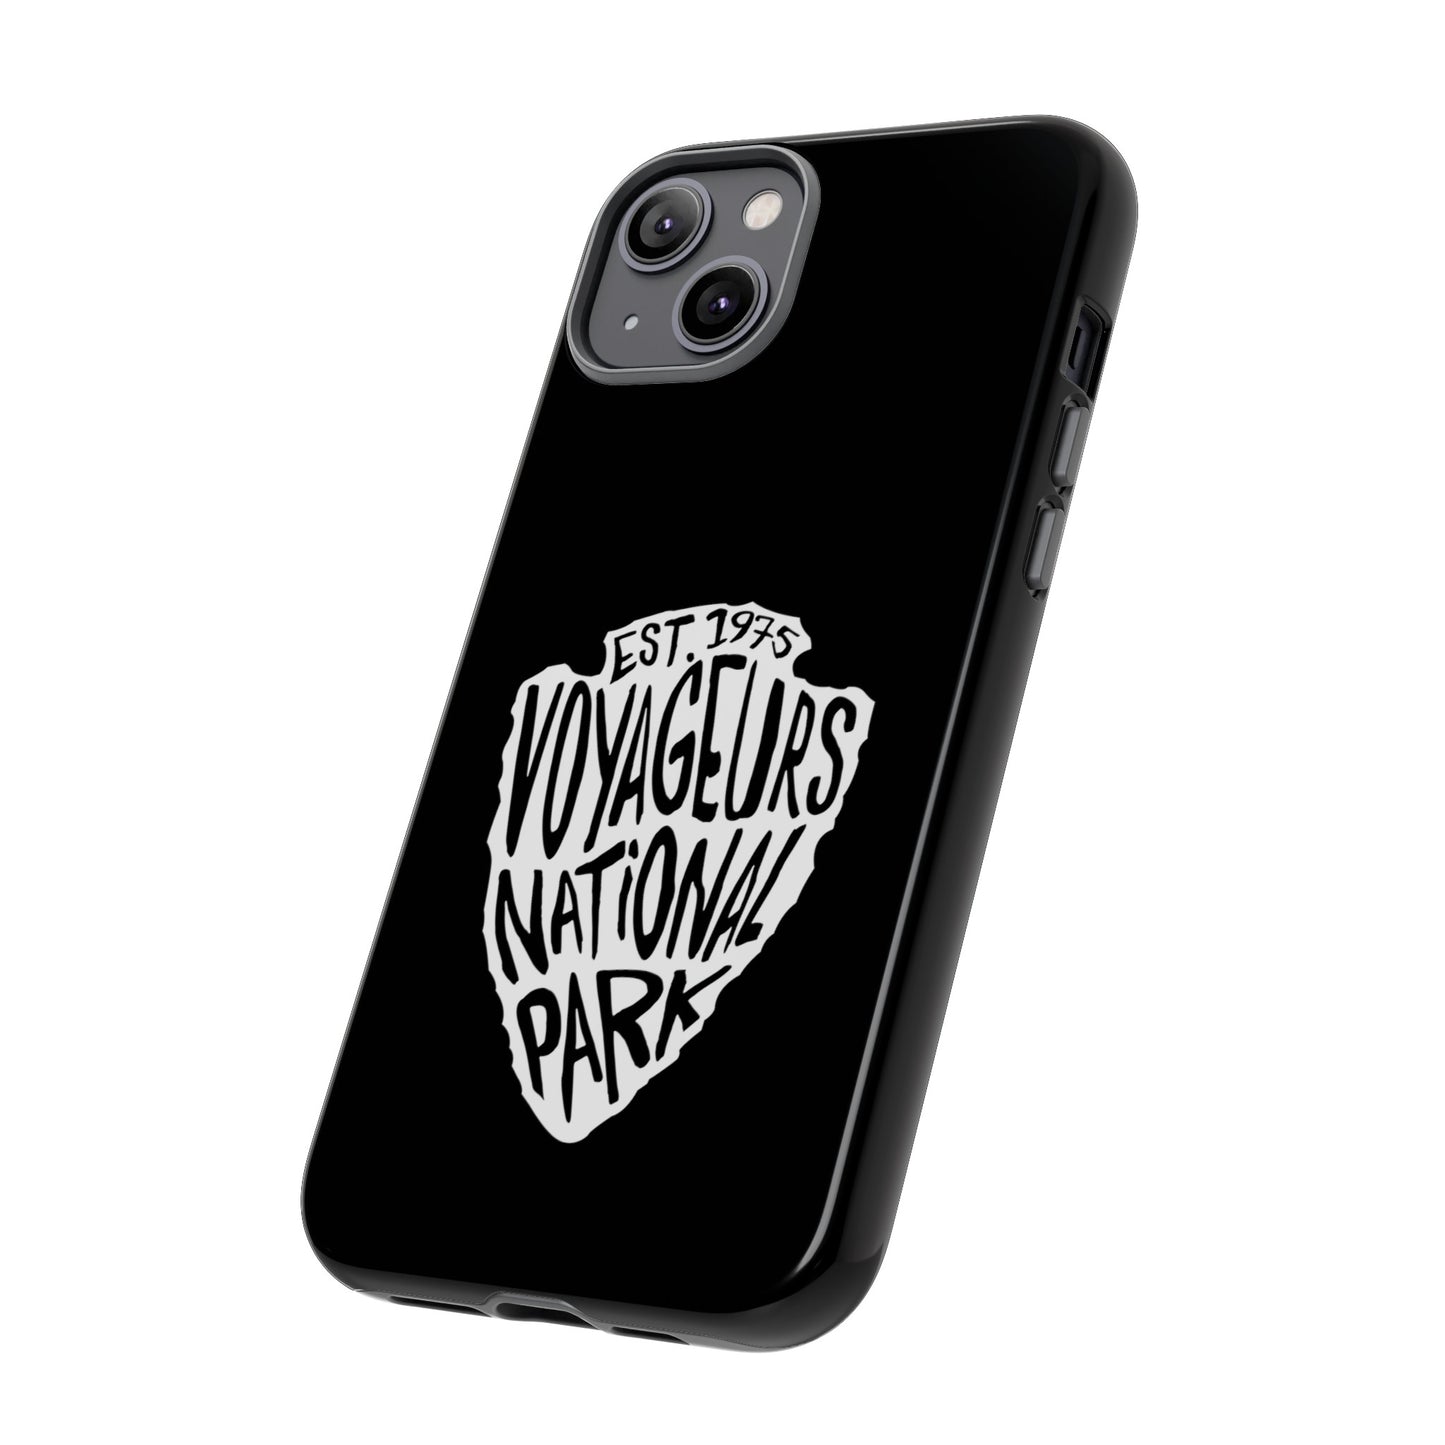 Voyageurs National Park Phone Case - Arrowhead Design